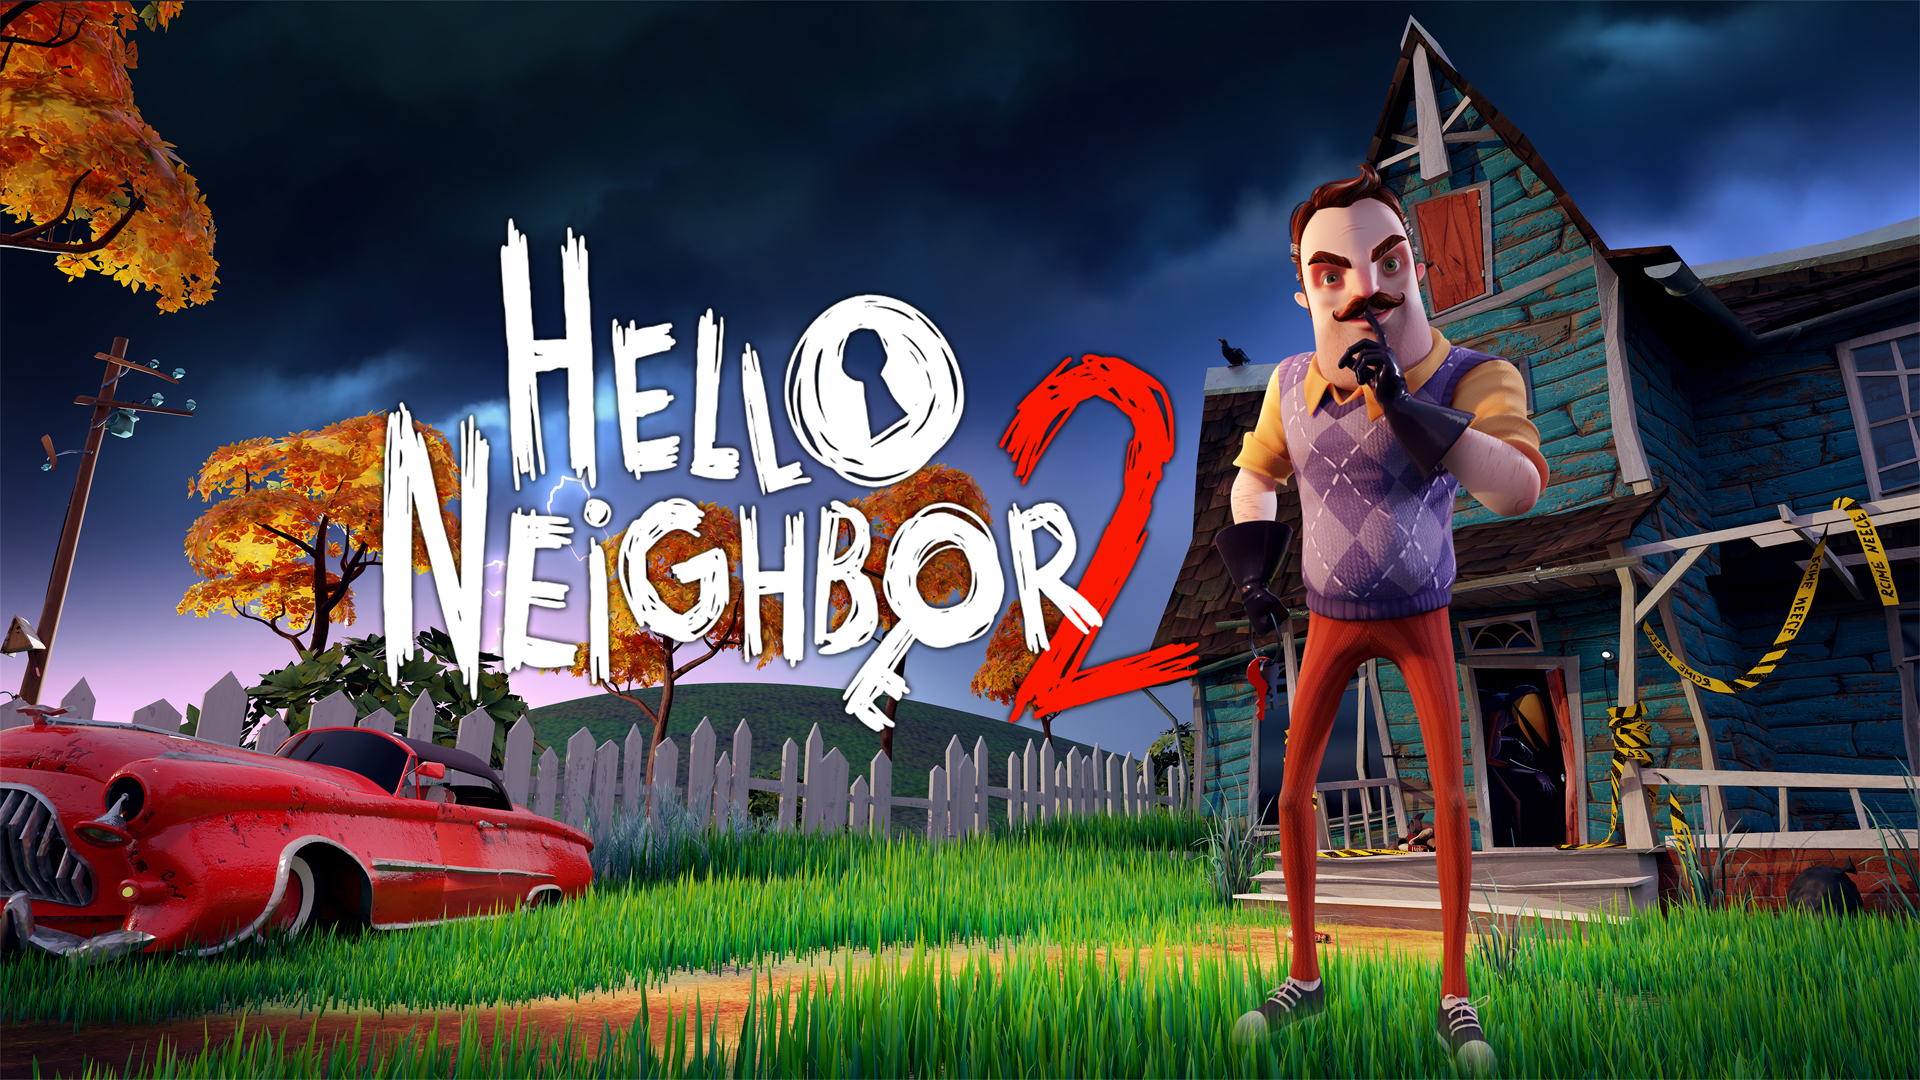 hello neighbor 2 alpha 1 door code